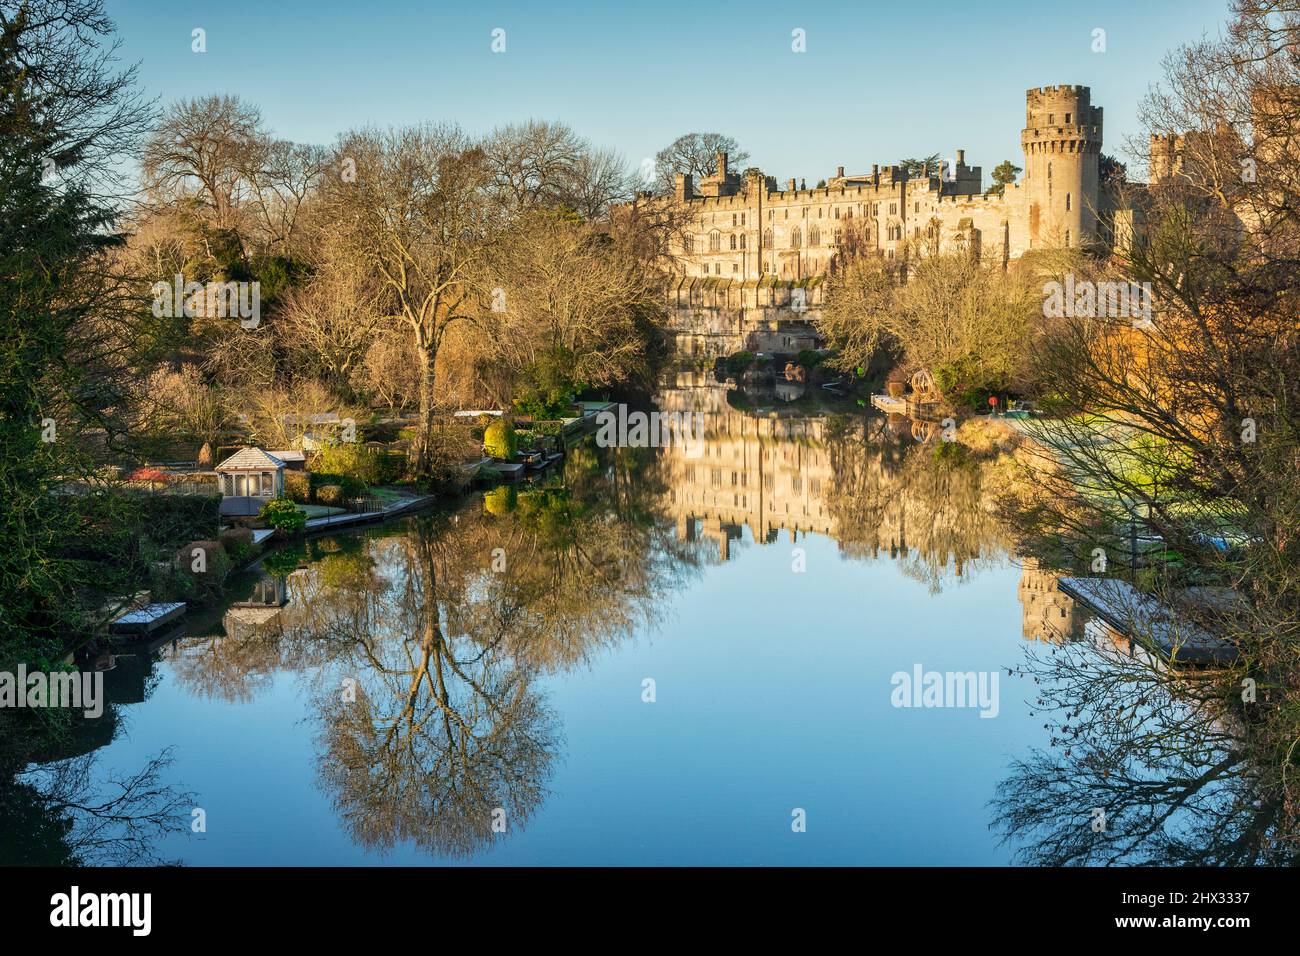 17 janvier 2022: Château de Warwick, Warwickshire, Royaume-Uni - Château de Warwick reflété dans la rivière Avon lors d'une belle journée d'hiver ensoleillée avec un ciel bleu clair. Banque D'Images